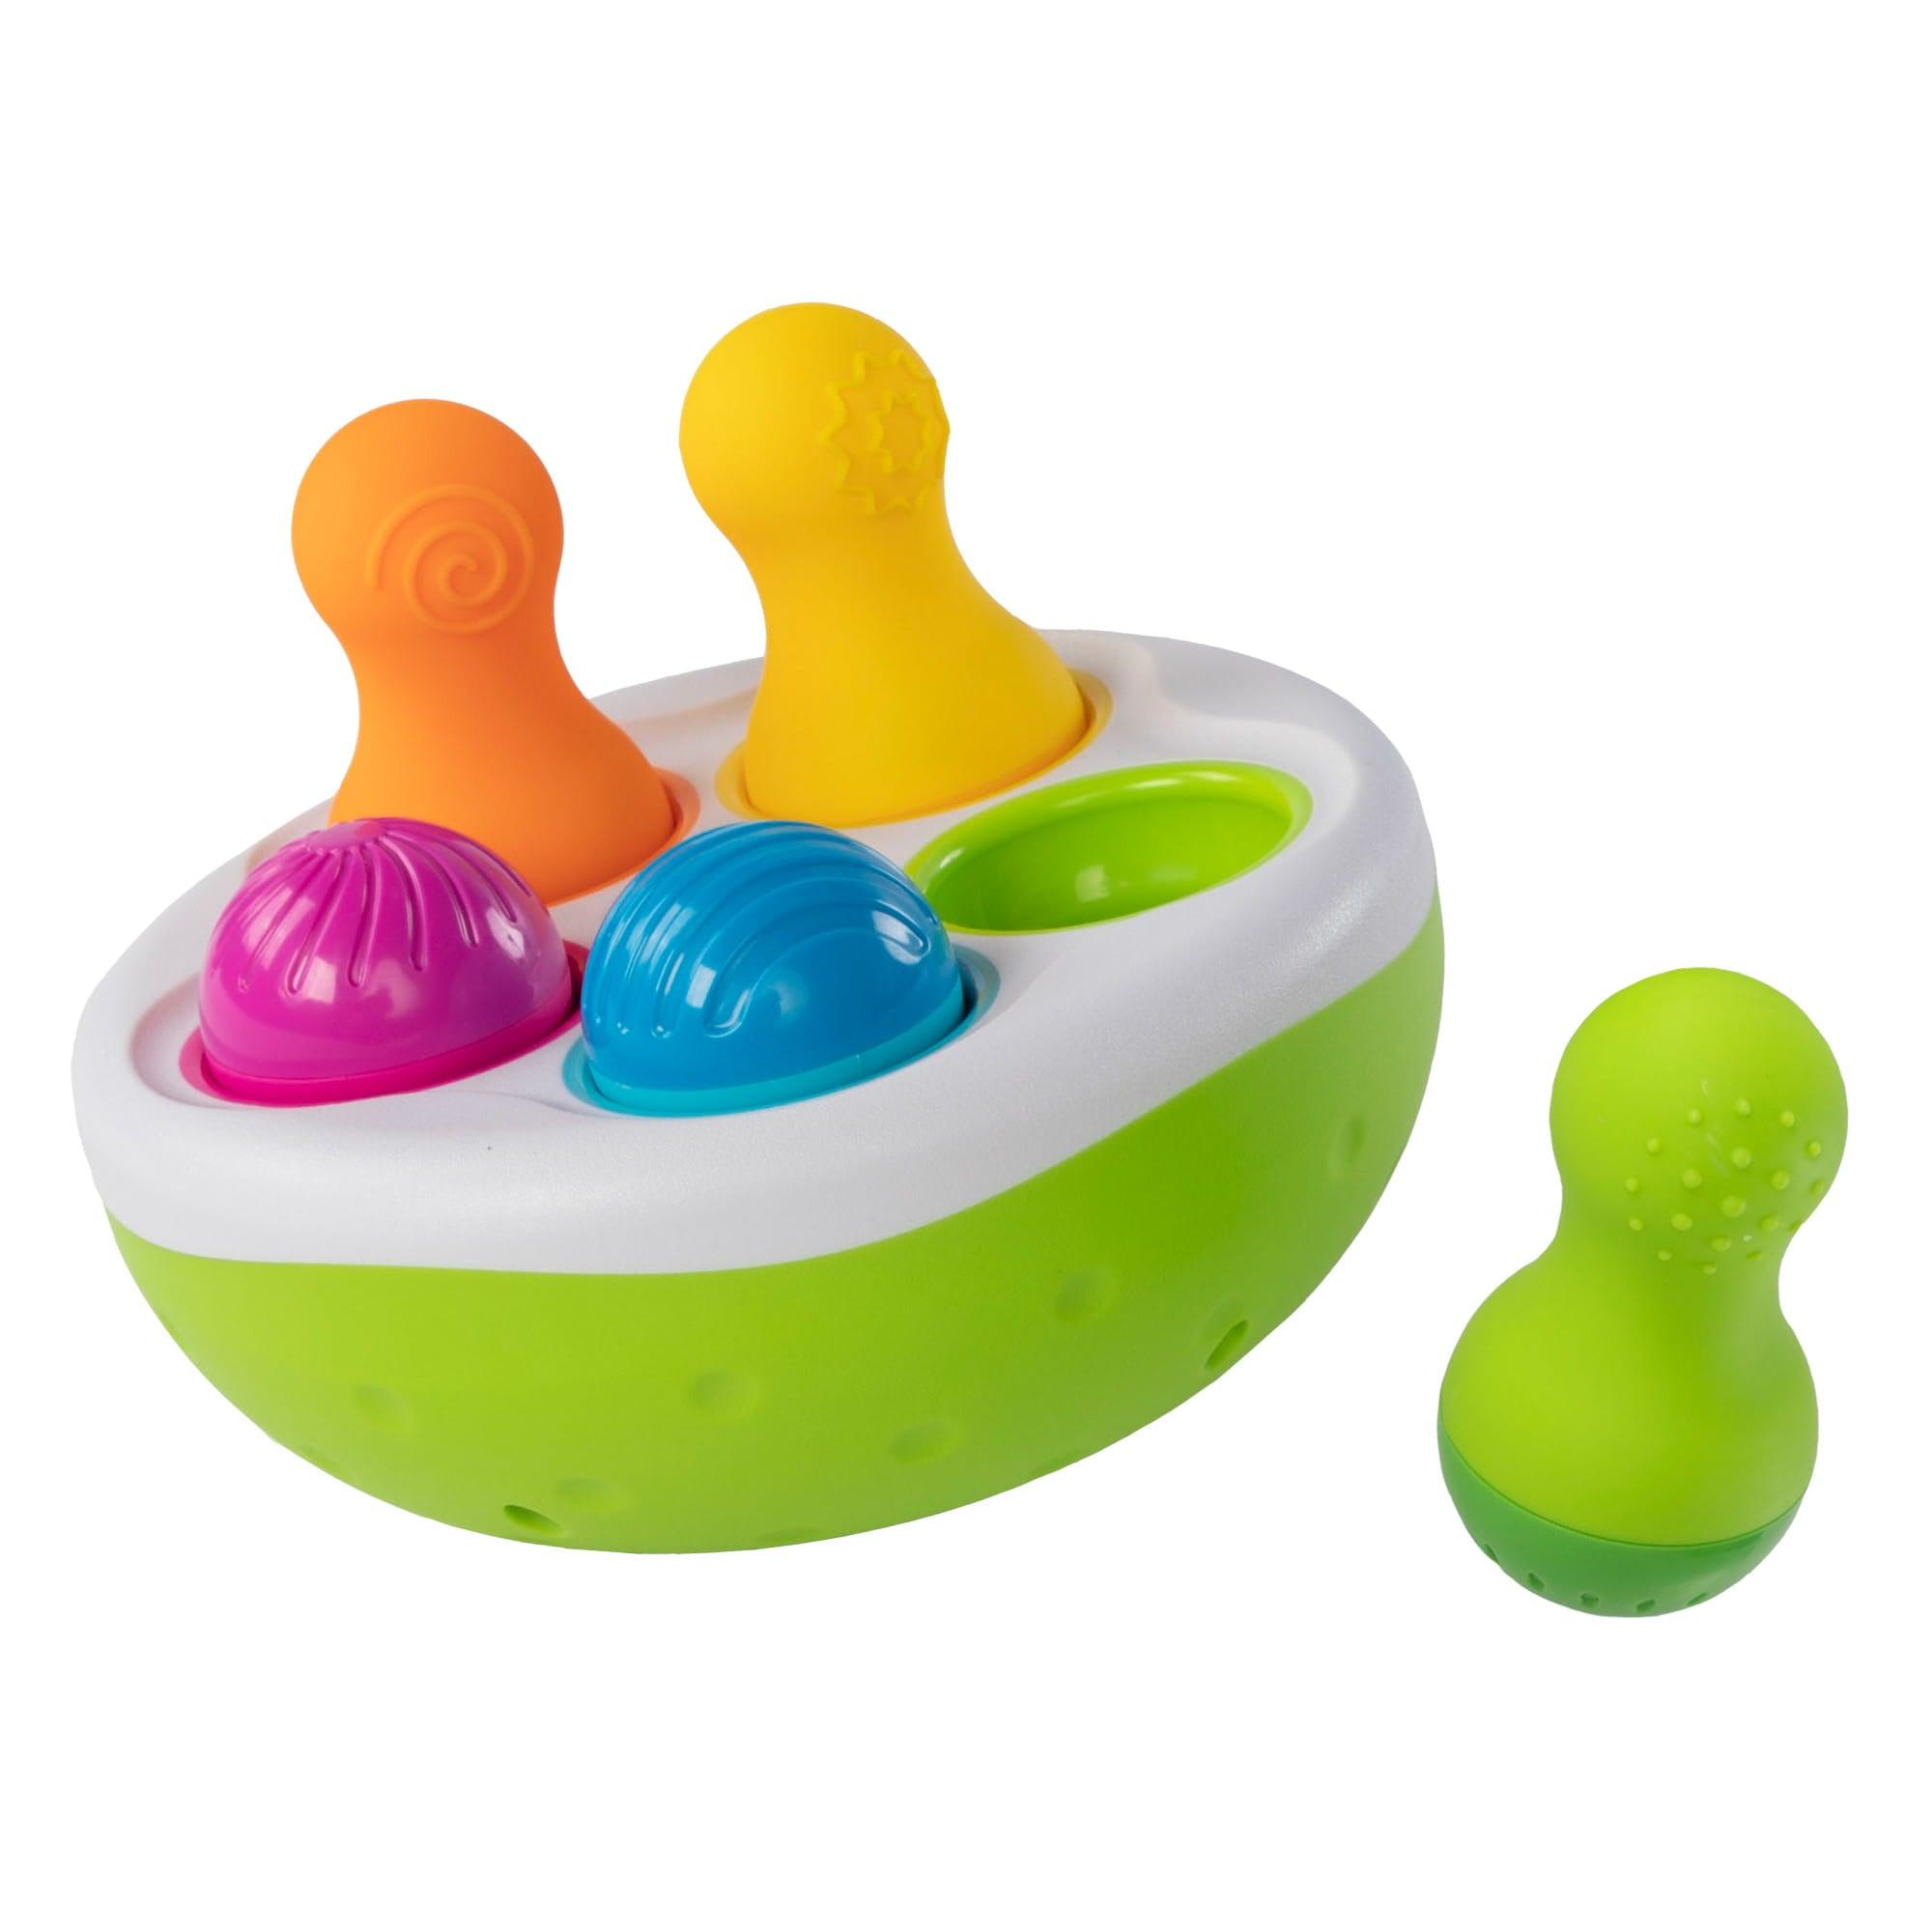 Kövér agyi játékok: spinnypinek színes buborékszíni